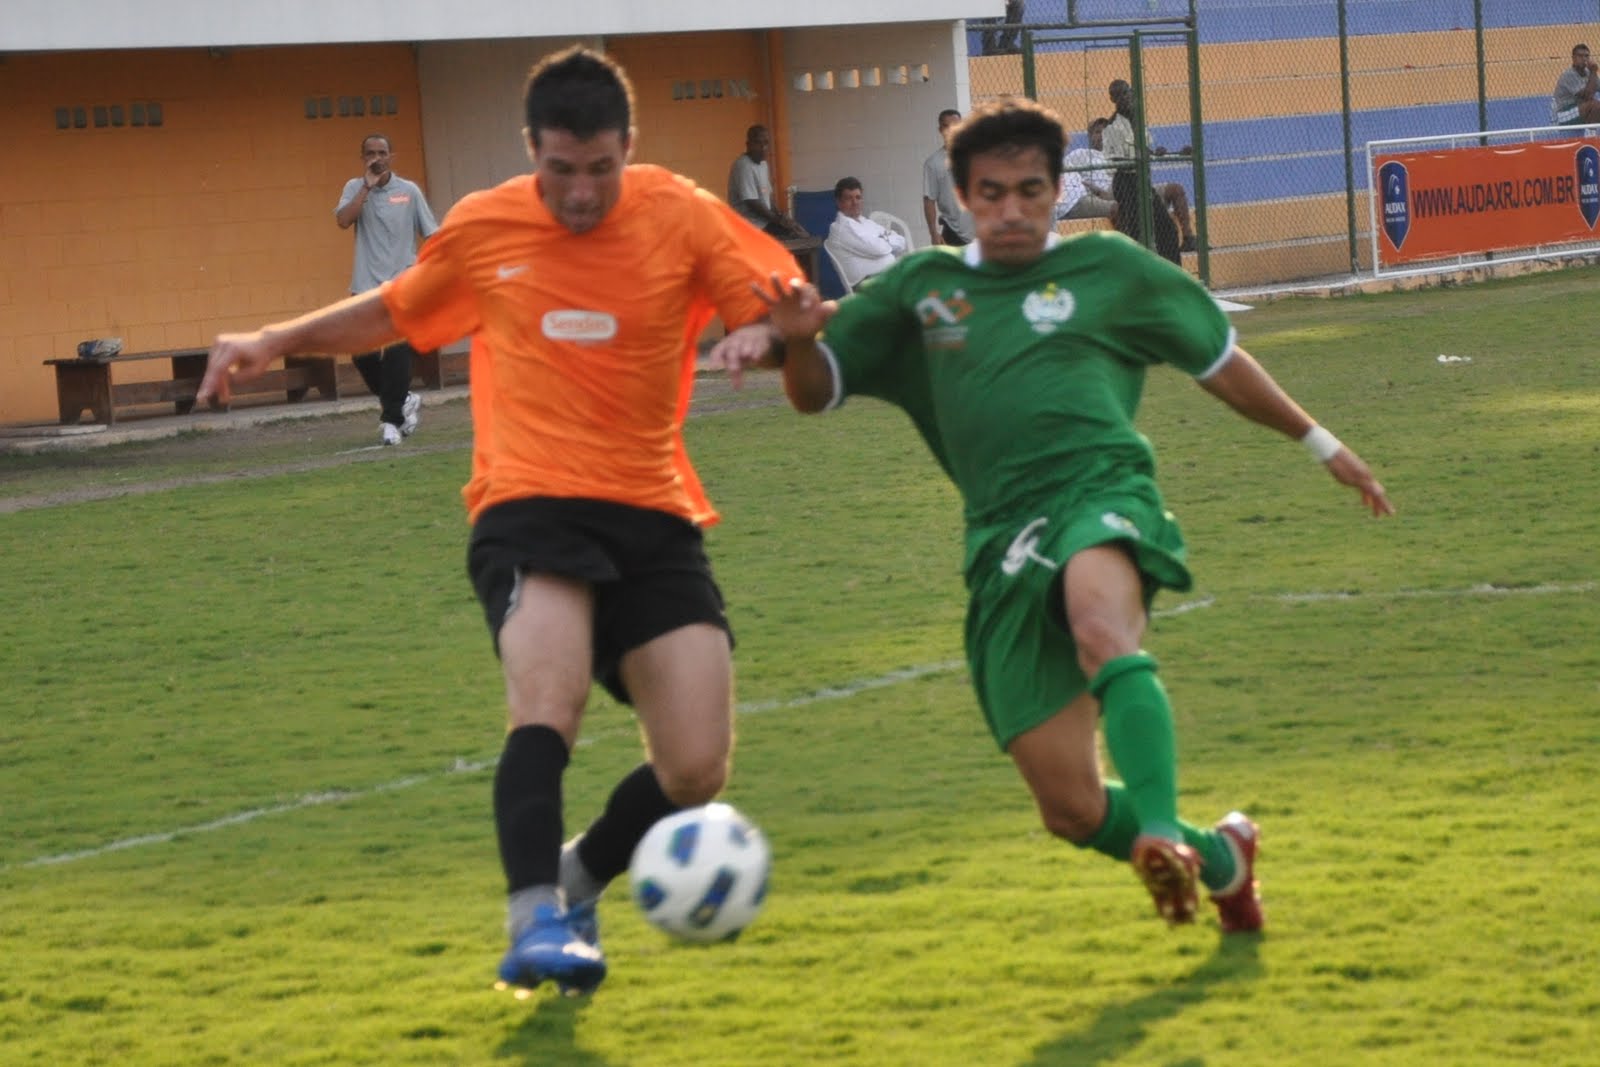 ⚽ Dois empates marcam a 4° rodada do Municipal de Futebol - Prefeitura  Municipal de Morrinhos do Sul